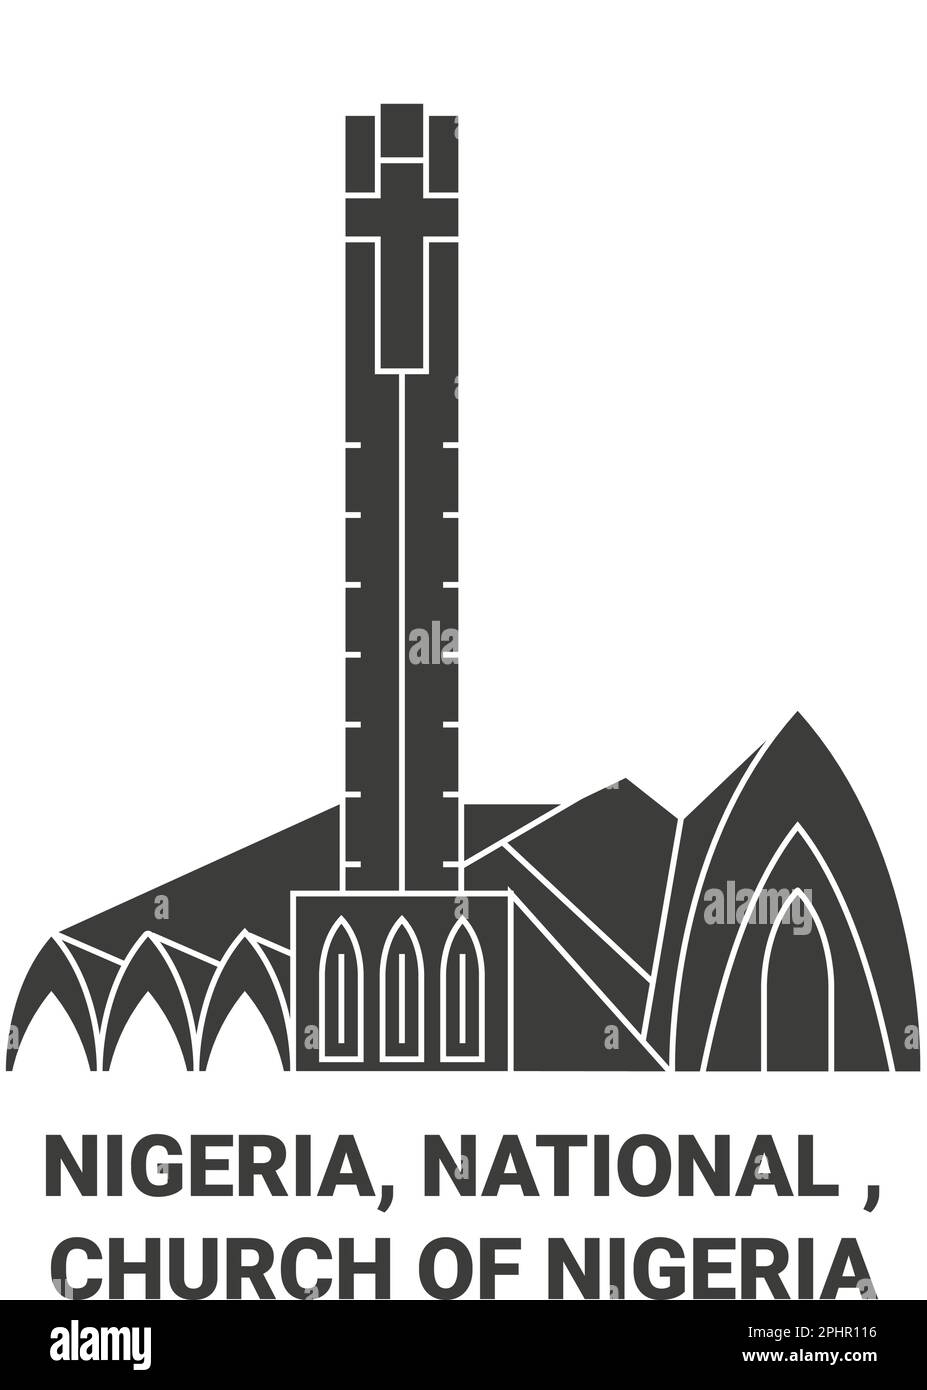 Nigeria, National , Church Of Nigeria travel landmark vector illustration Stock Vector